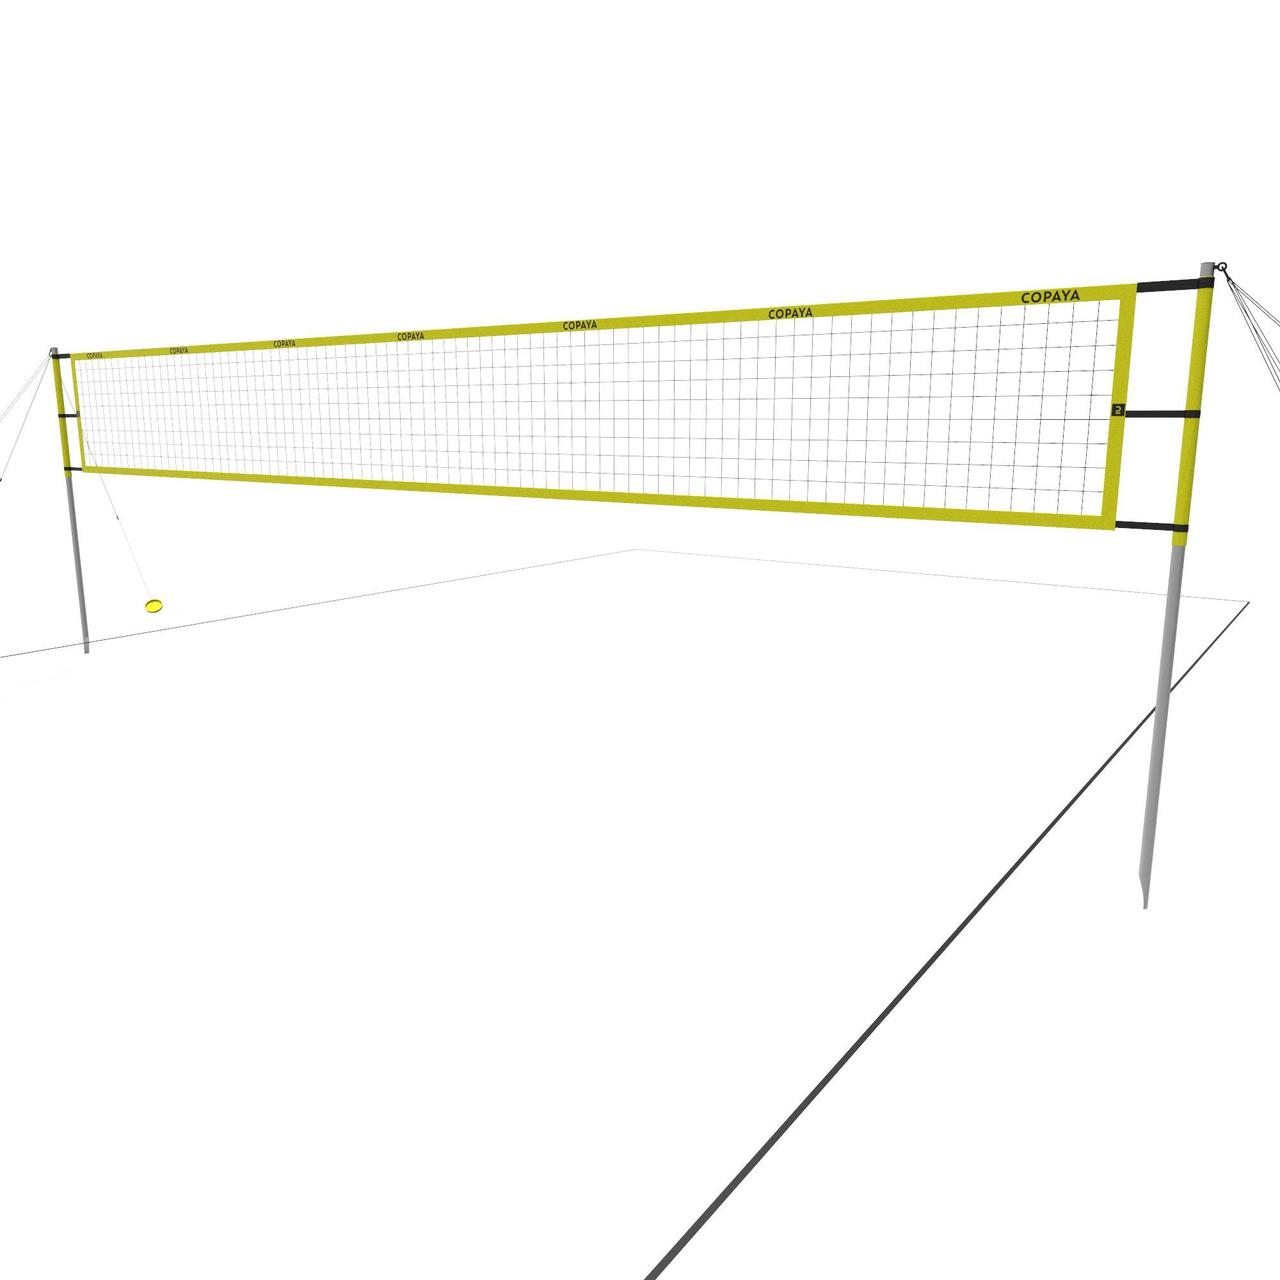 Комплект для Пляжного Волейболу COPAYA (2,24 м; 2,35 м; 2,43 м і Крок 8 х 16 м) Регульовані Опори Жовтий